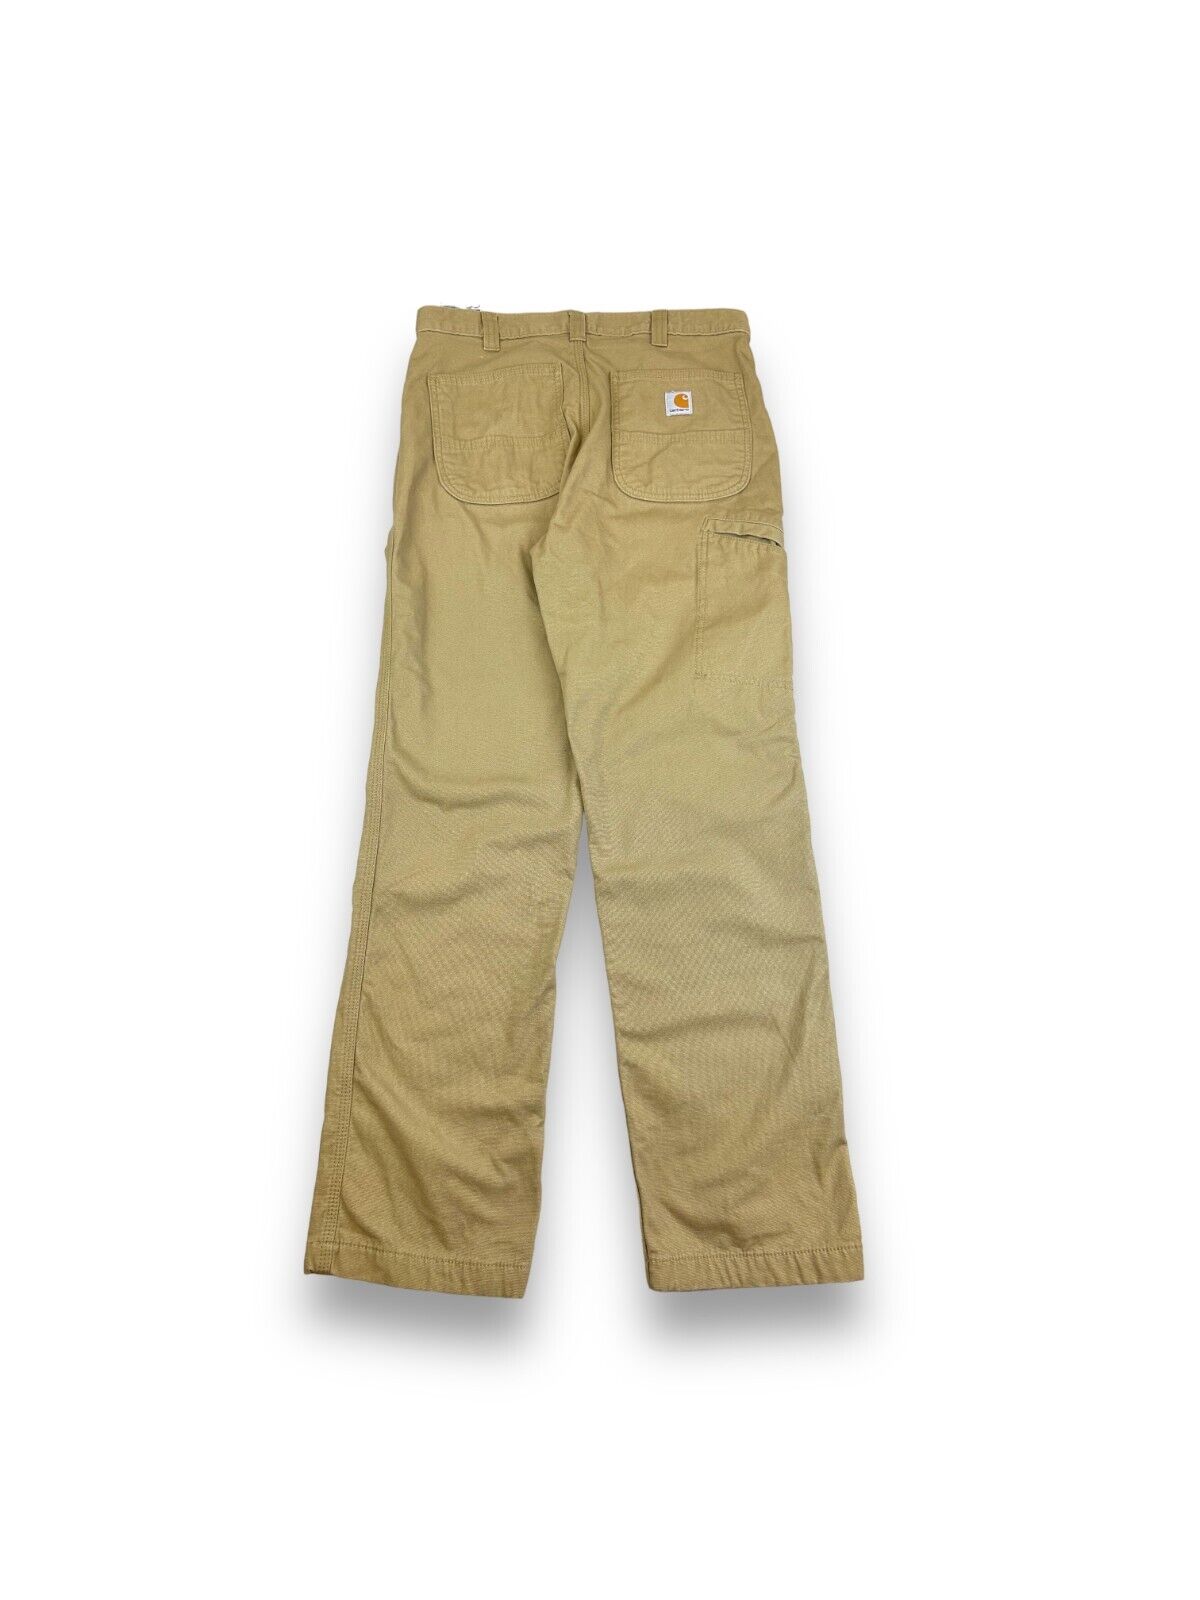 Carhartt Relaxed Fit Fleece Lined Workwear Carpenter Pants Size 33W Beige